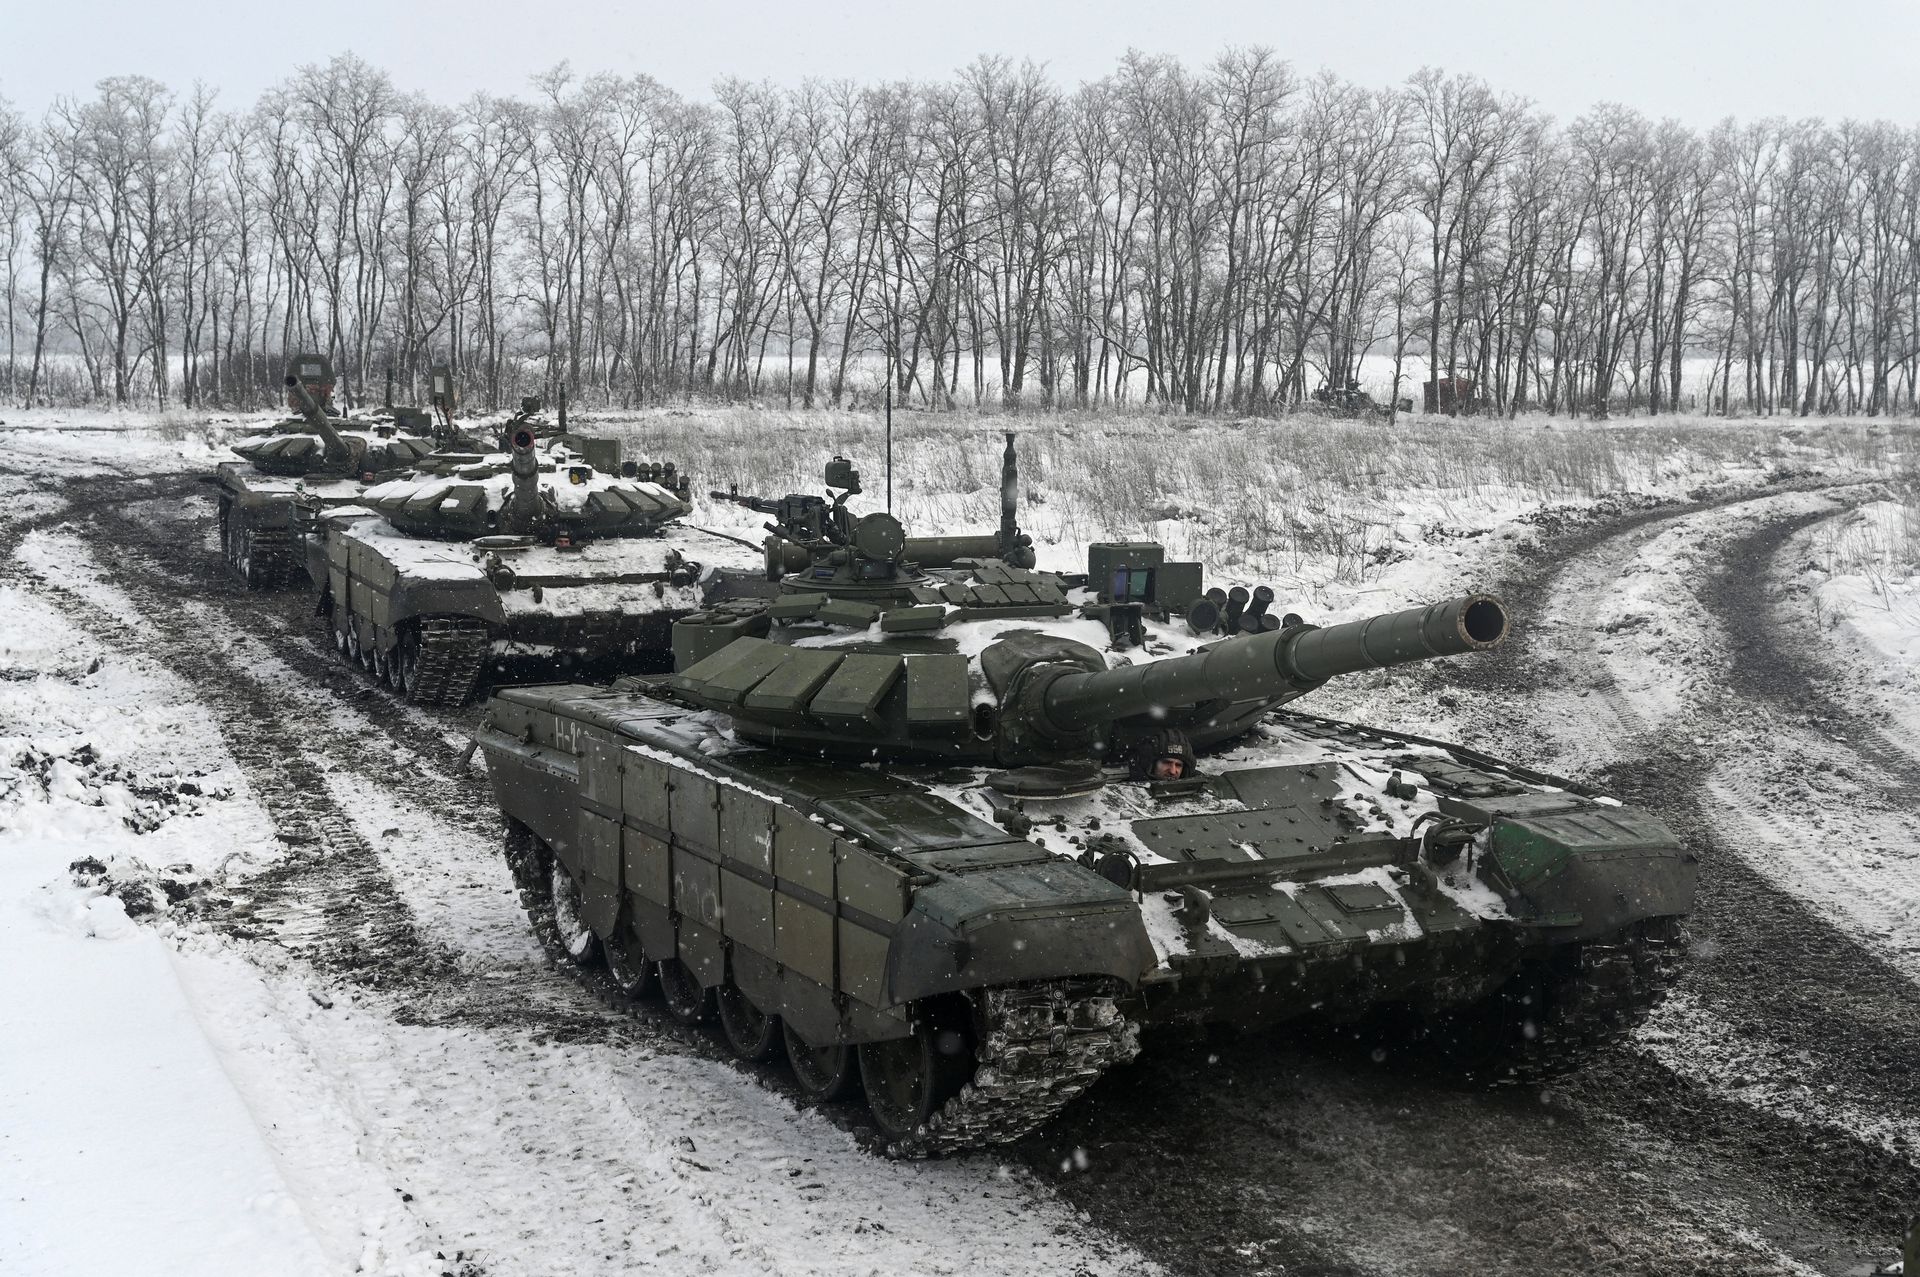 Russian T-72B3 main battle tanks